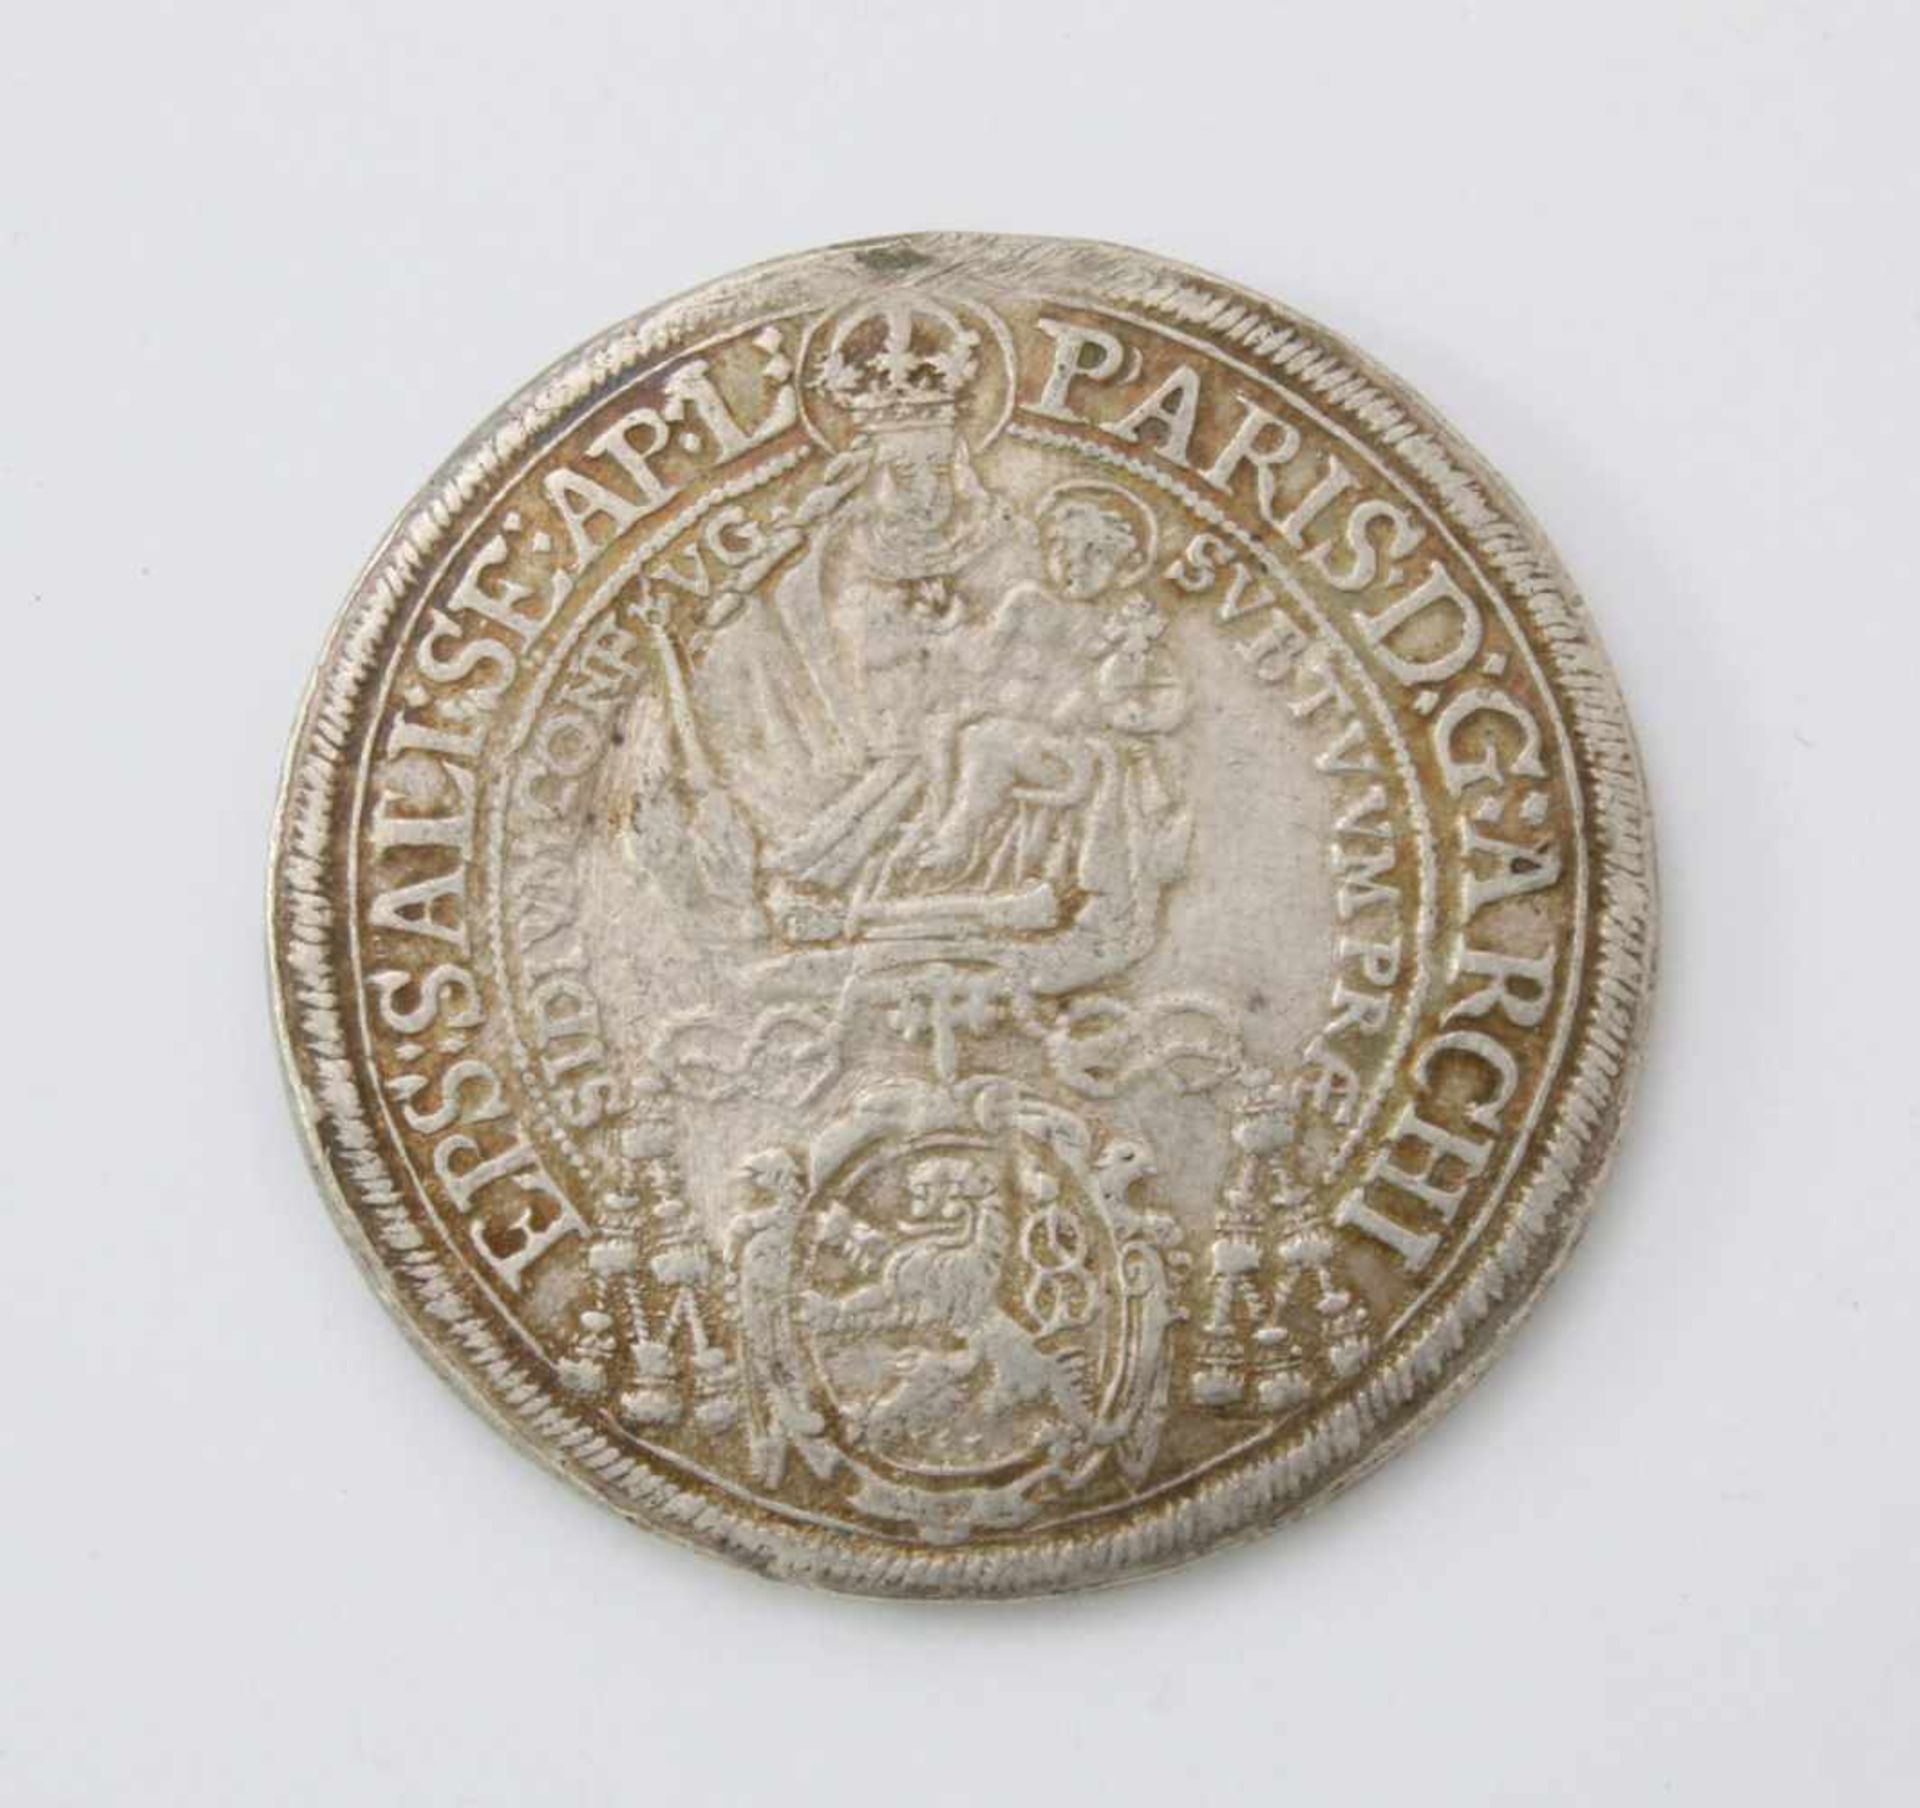 Salzburg Erzbistum Taler 1638 - Paris Graf von LodronSilbermünze; Gew.: 28,85 g. - Bild 2 aus 2